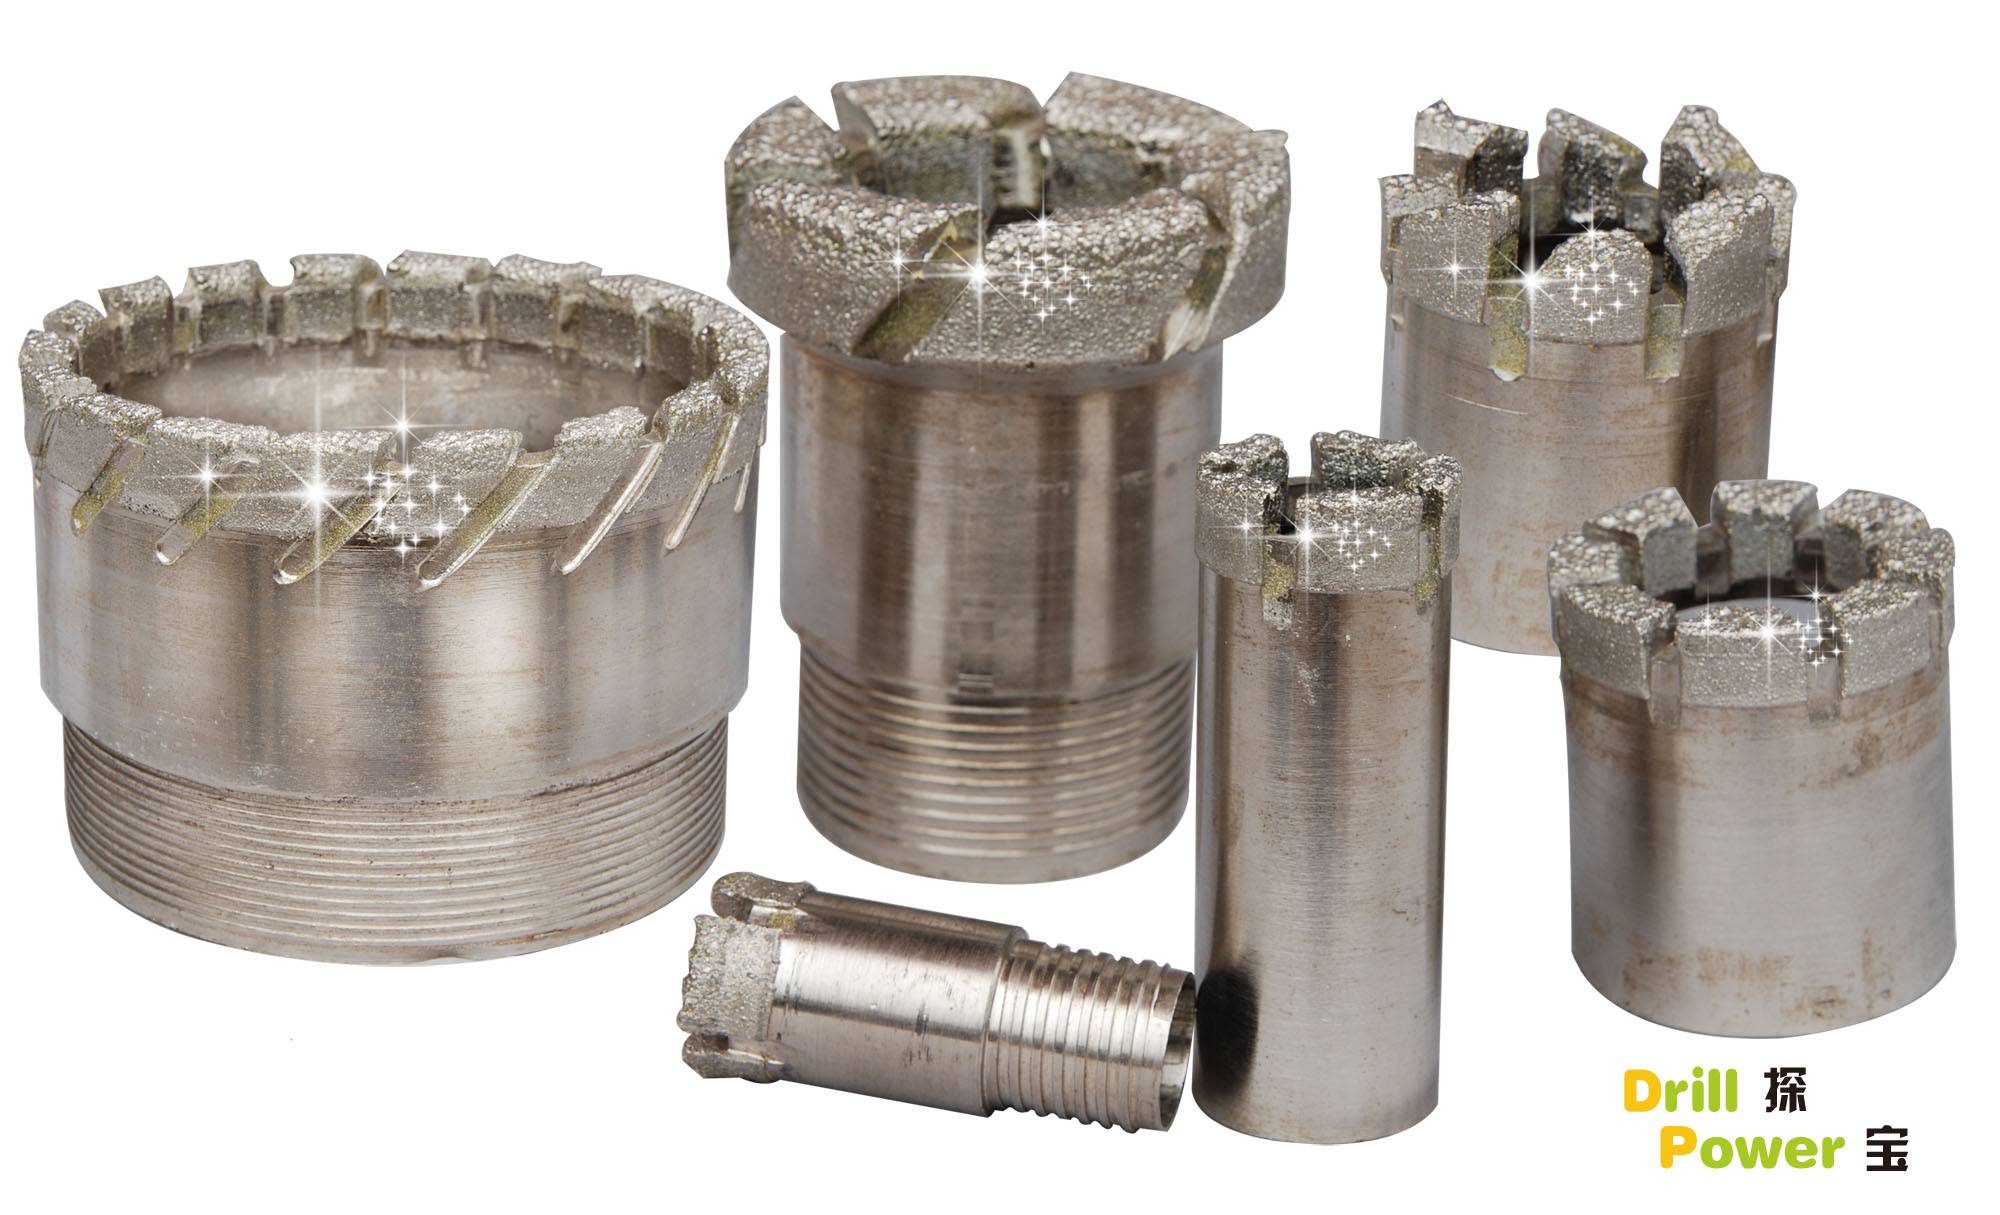 Impregnated Diamond Core Bits Drill Bits Manufacturer, Supplier & E...